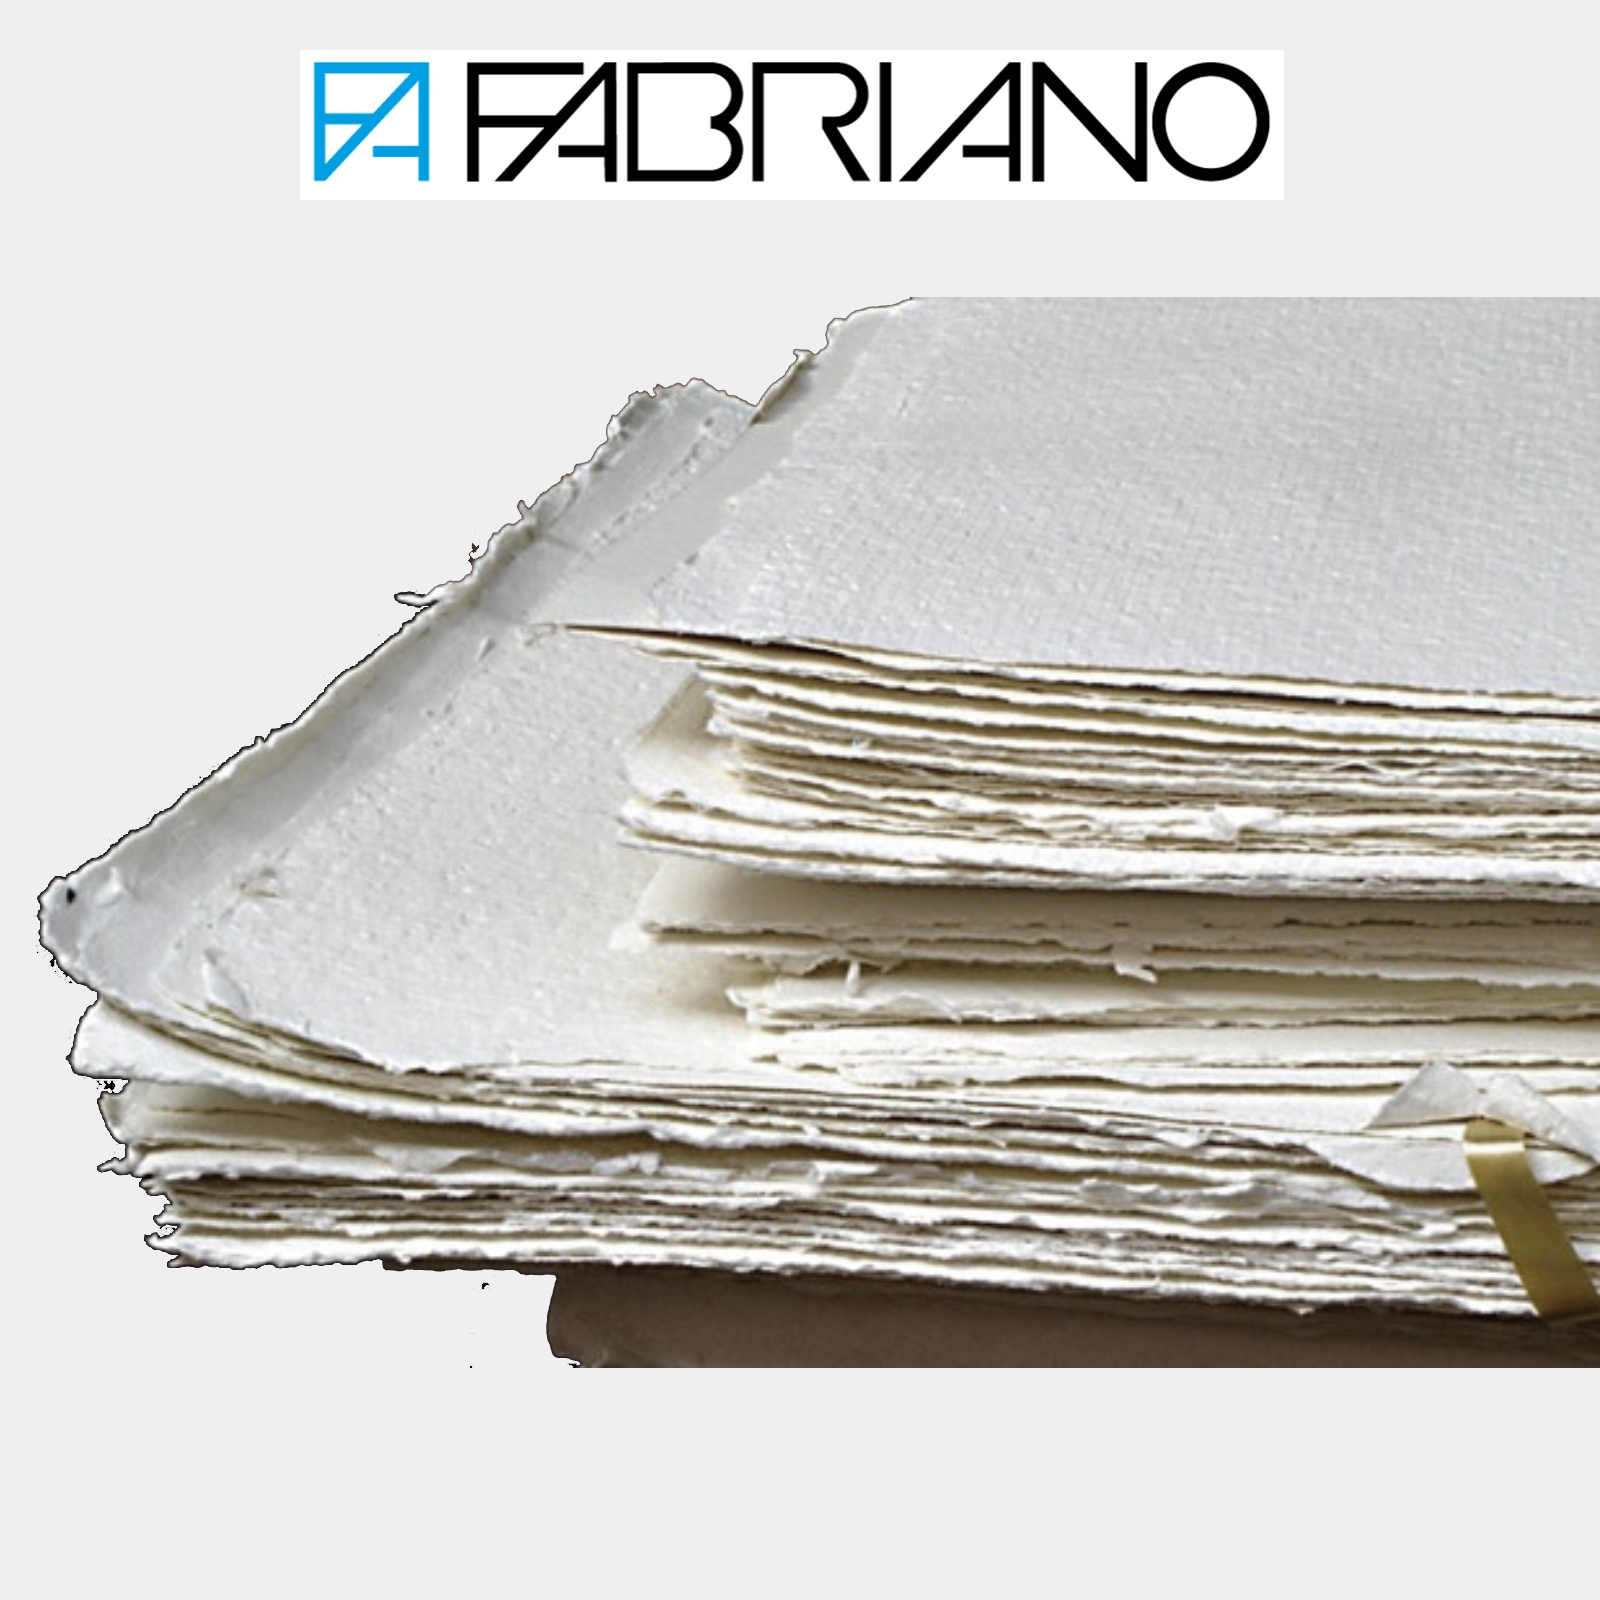 Carta Fabriano Artistico Extra White in fogli 56x76 cm per acquerello -  Pellegrini Brera - La Bottega d'Arte di Milano